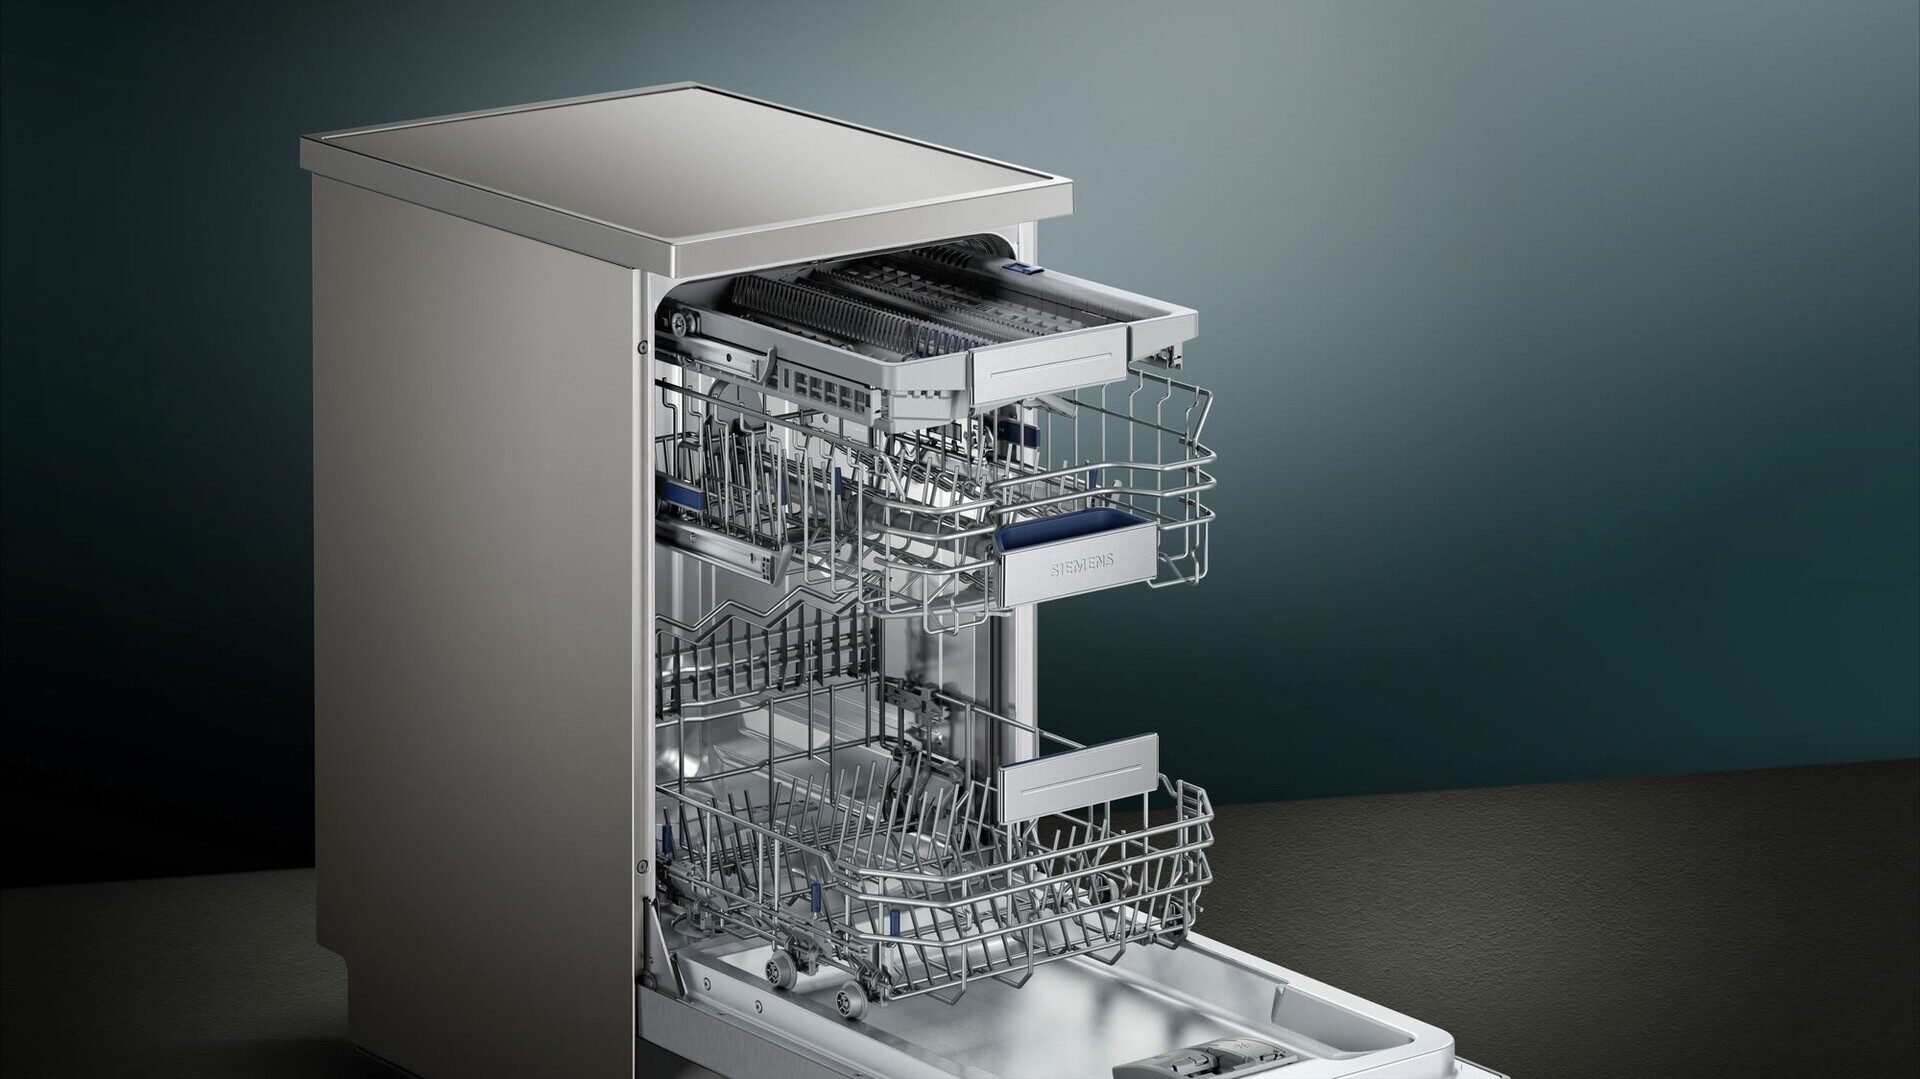 Лучшие компактные посудомоечные машины: выбор zoom. cтатьи, тесты, обзоры